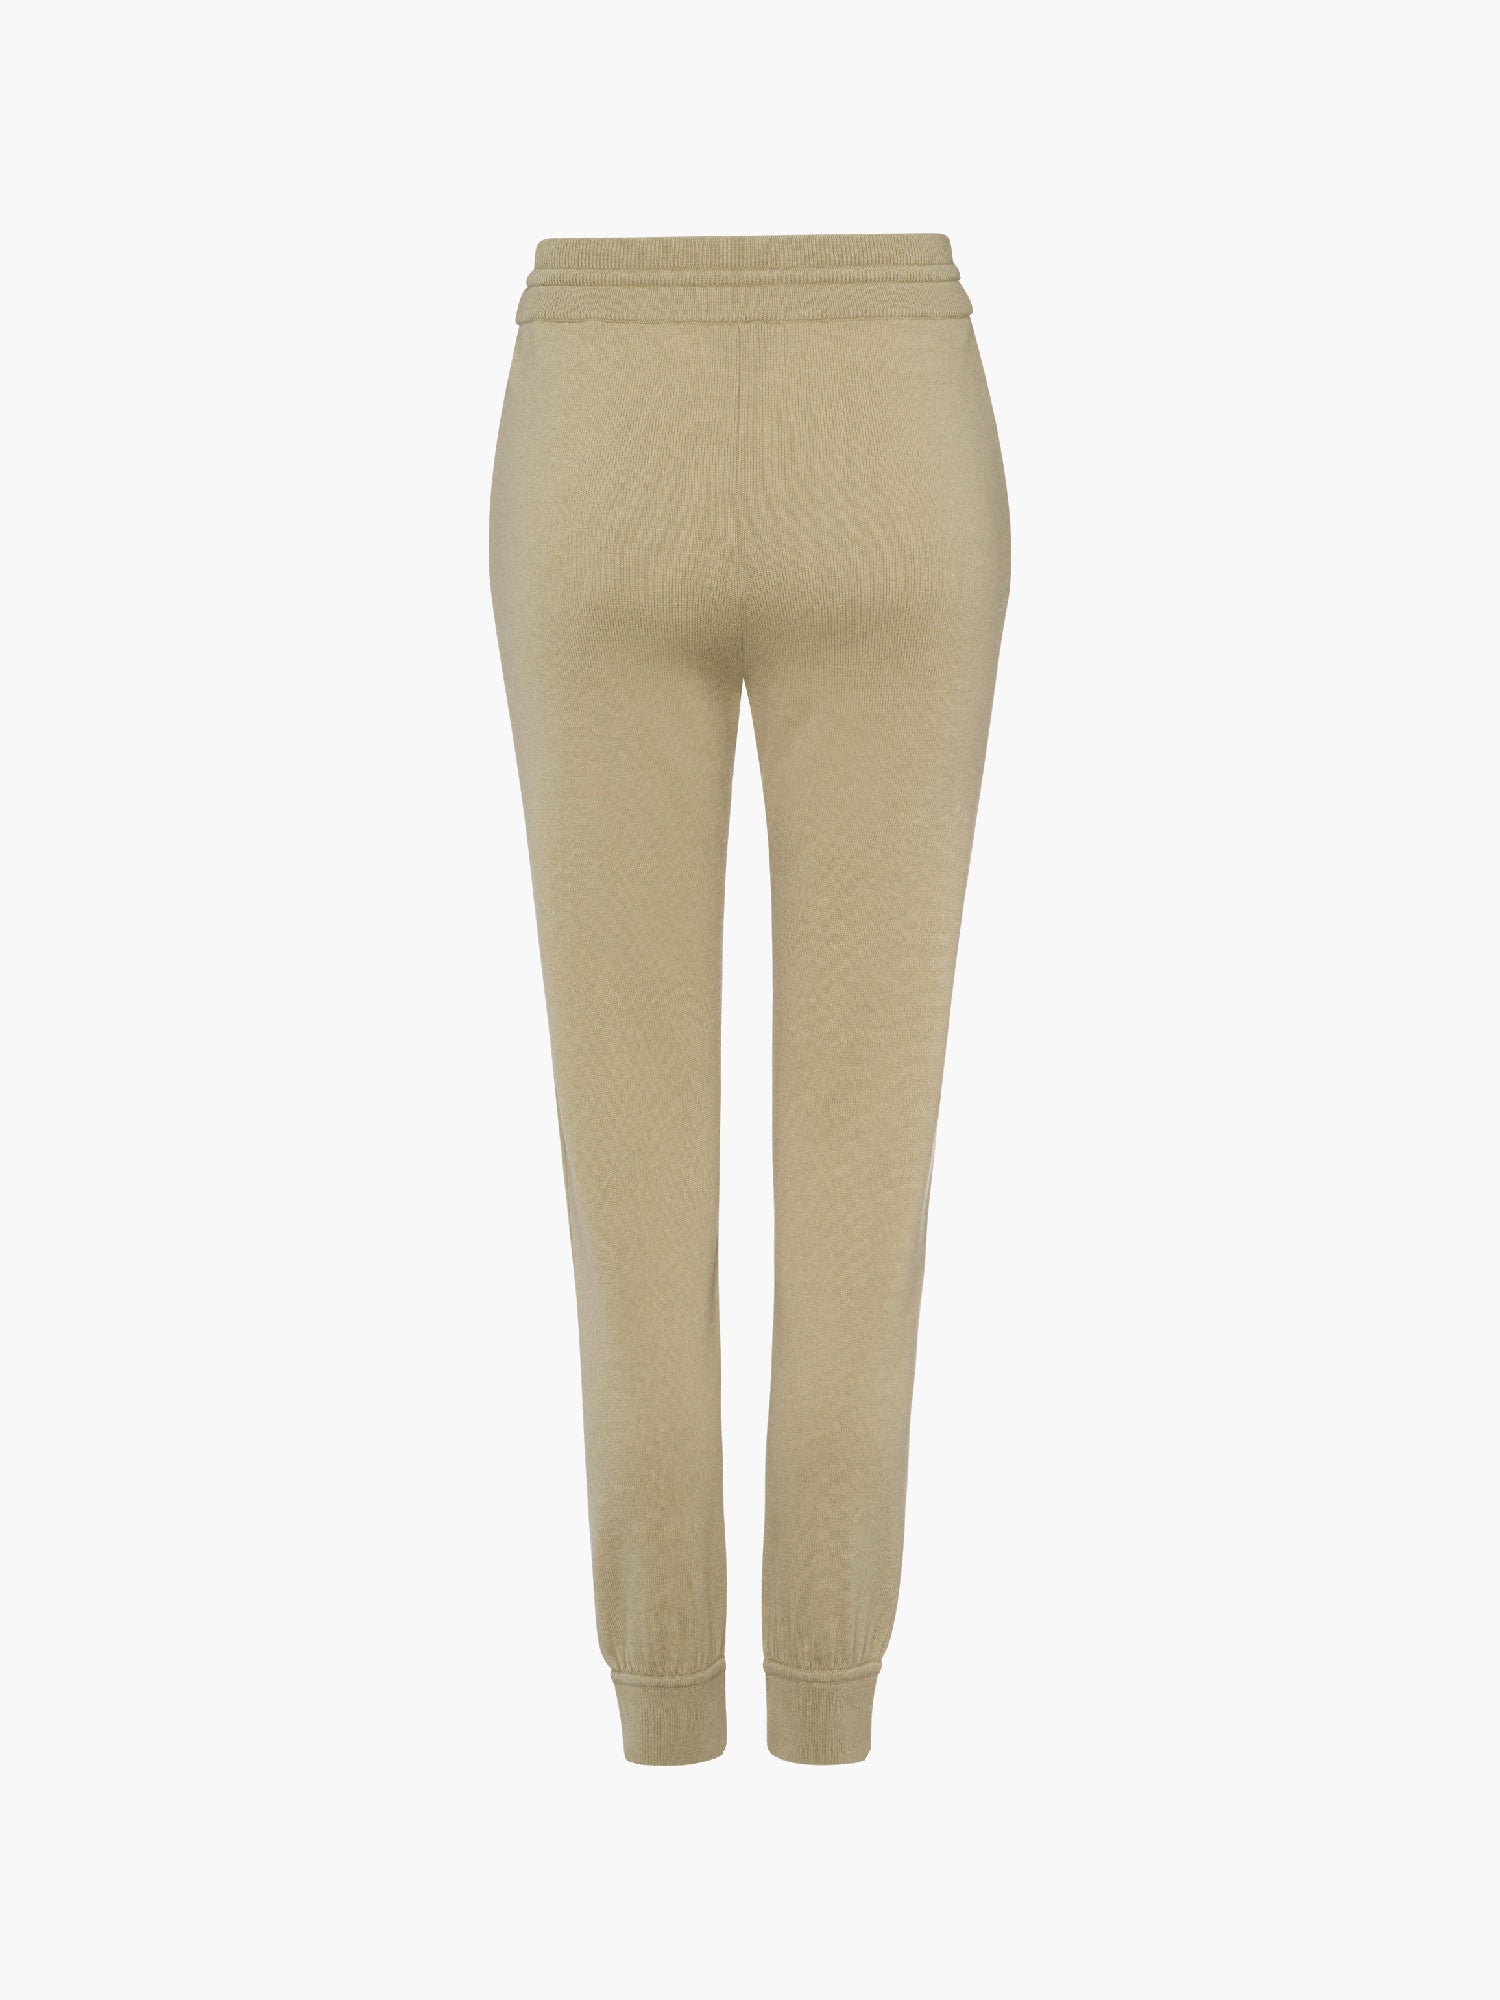 FTC-CASHMERE-OUTLET-SALE-Trousers 100% Cashmere-Hosen-MUNICH_VILLAGE-by-ARCHIVIST